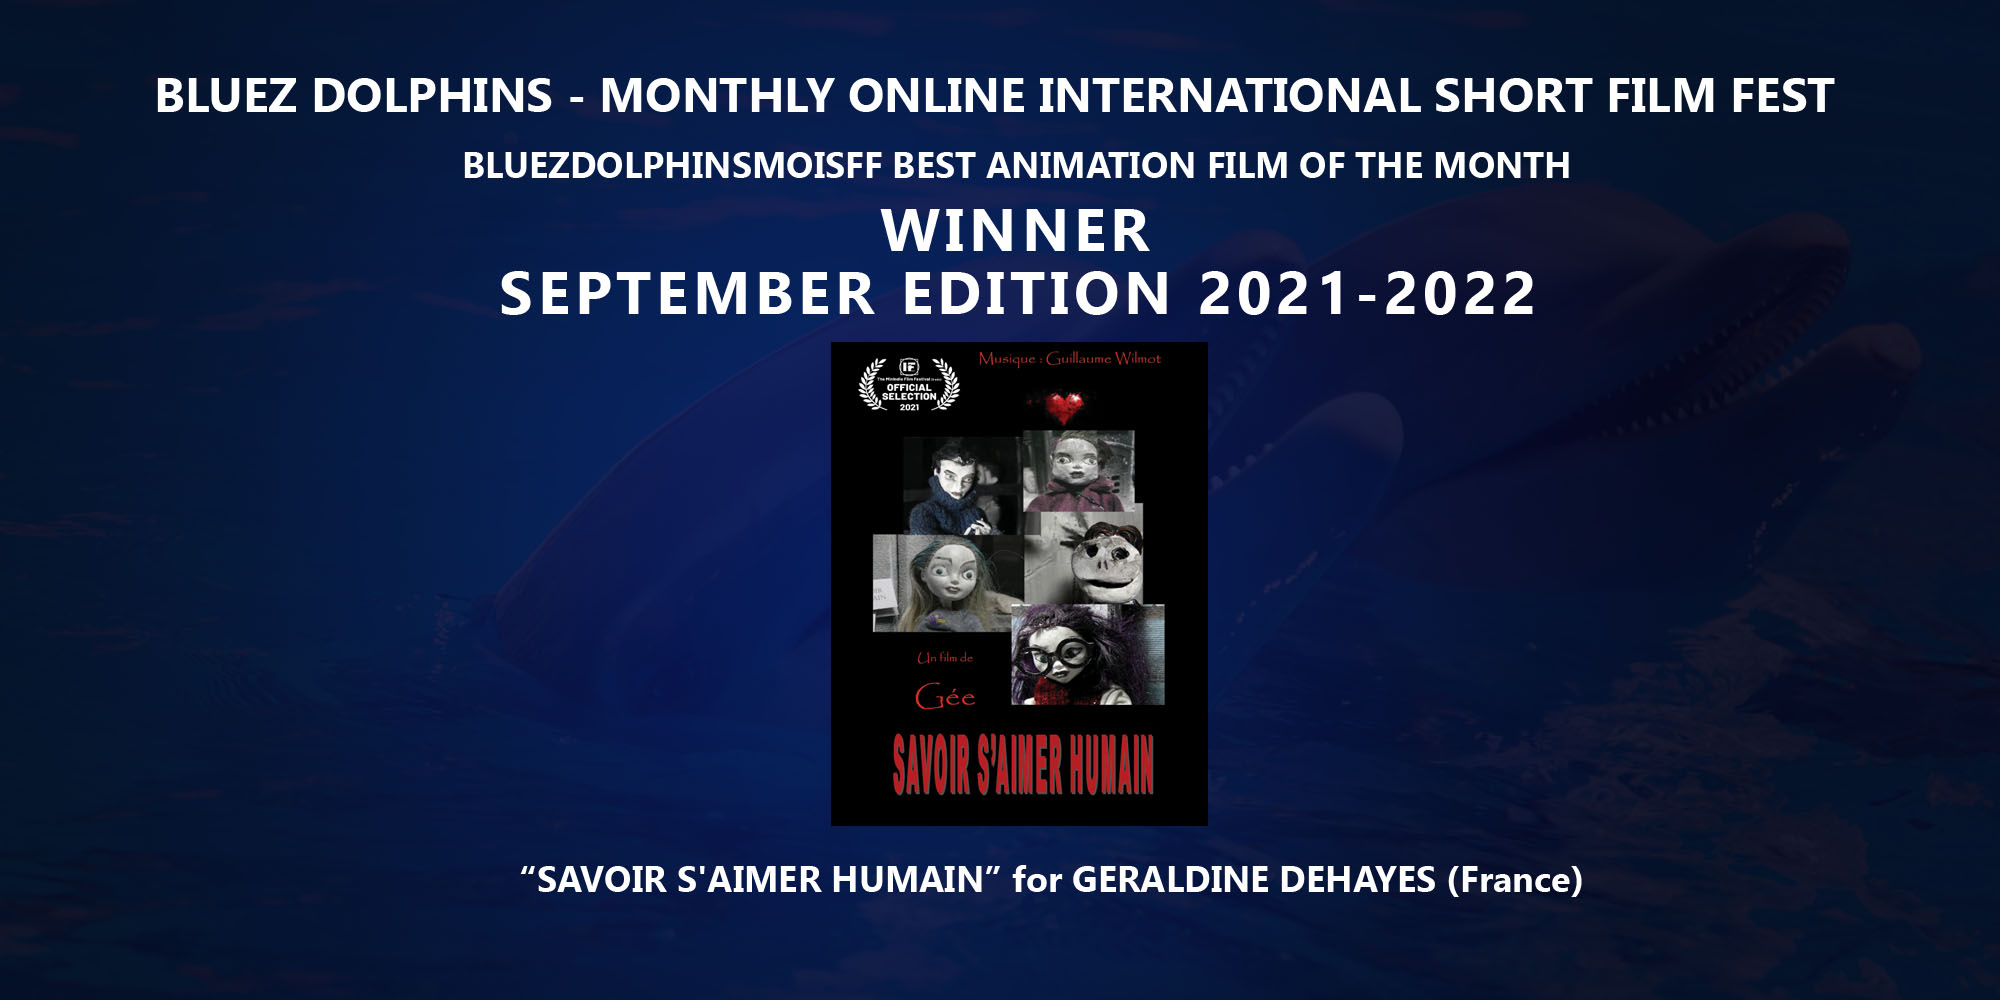 Award Winner September 2021